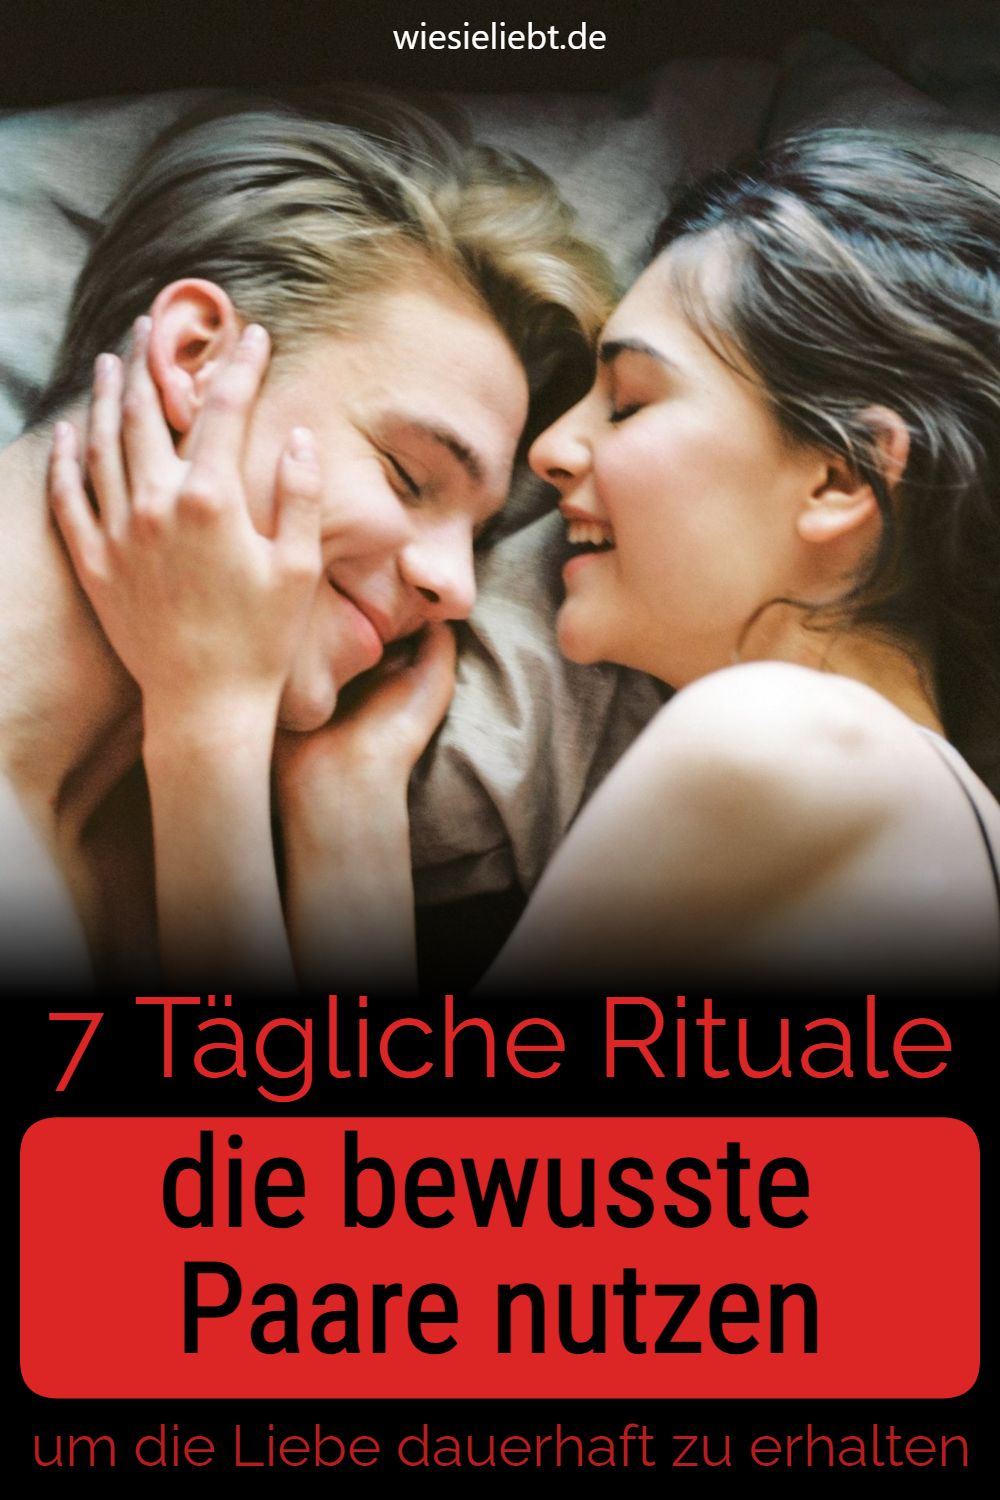 7 Tägliche Rituale die bewusste Paare nutzen um die Liebe dauerhaft zu erhalten